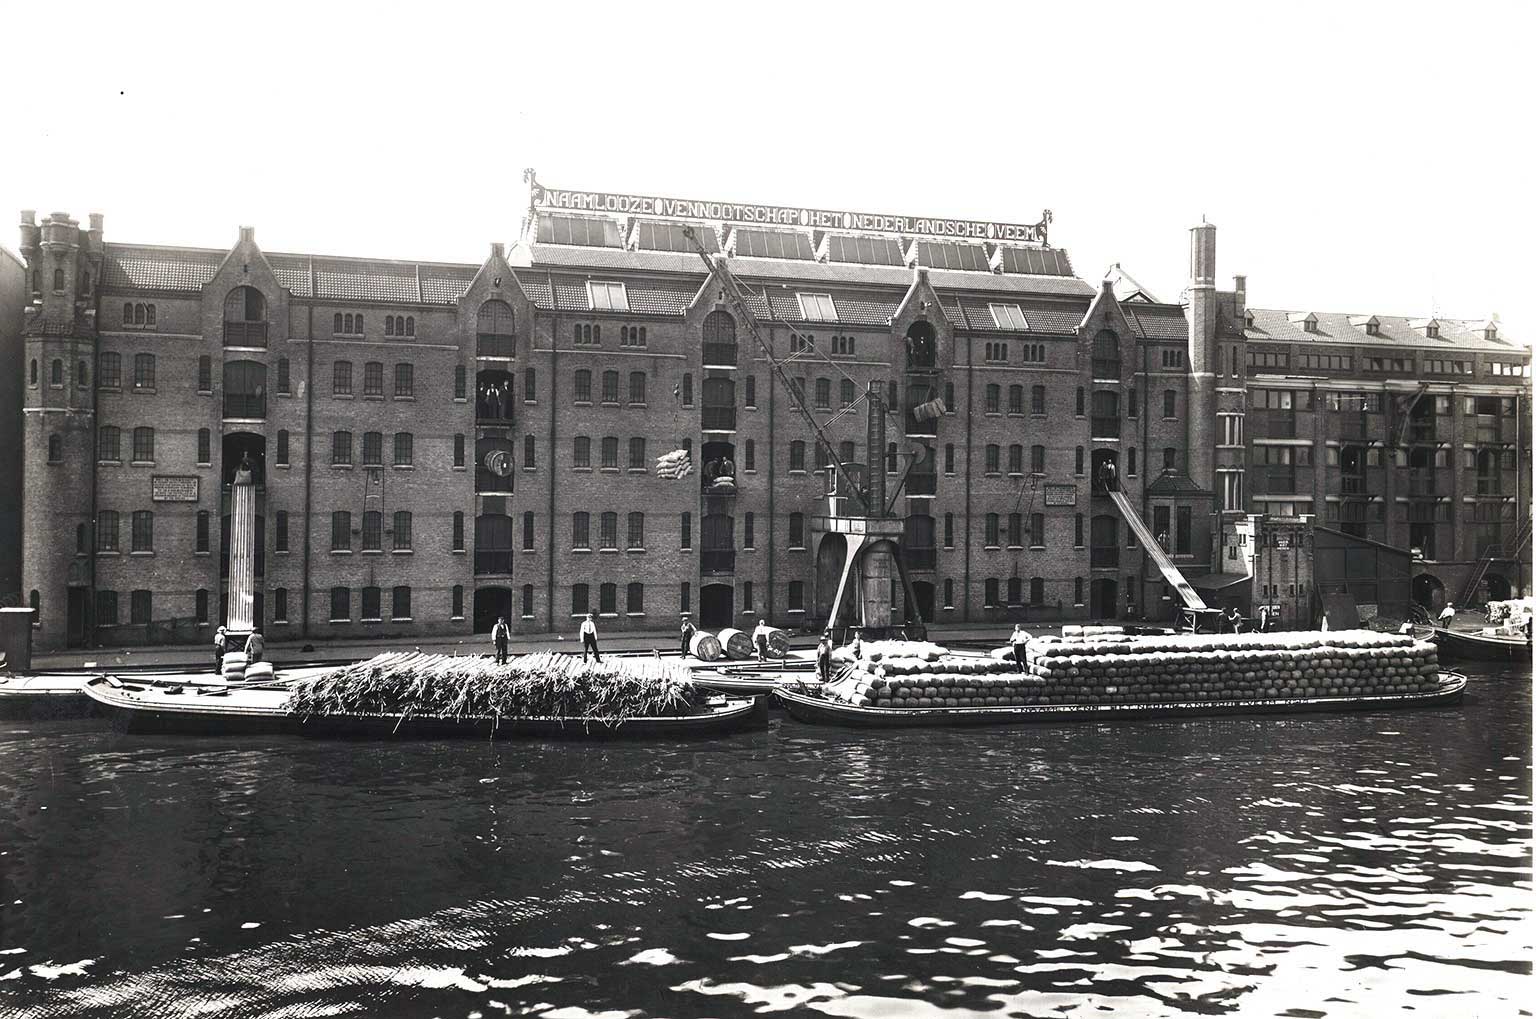 Achterkant van het Nederlandsche Veem aan de Van Diemenkade, Amsterdam, in 1950